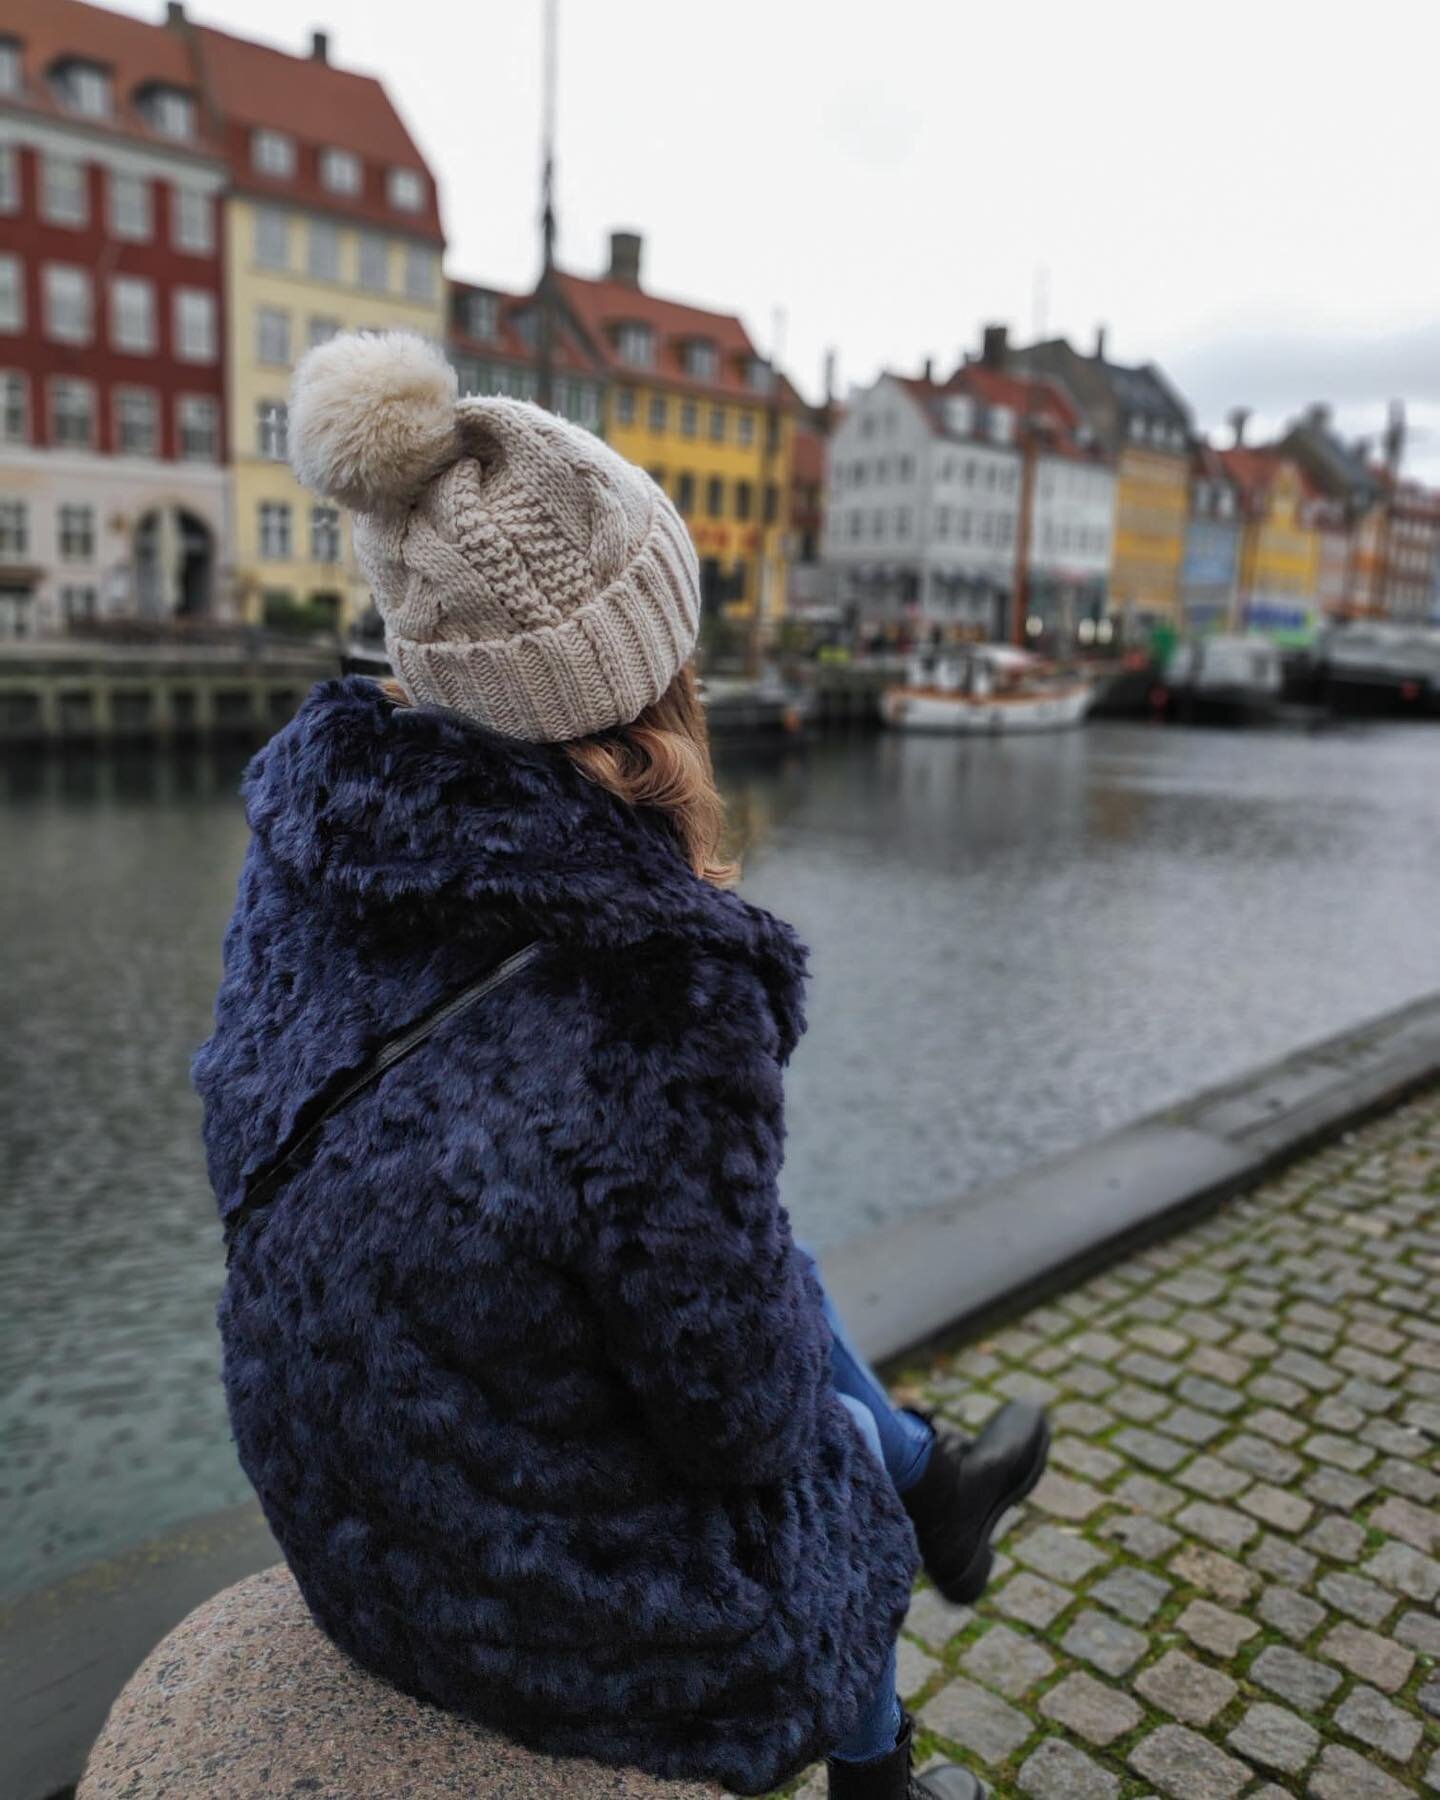 Discovering Copenhagen 🇩🇰 _______________________________________________________

Hey, 
J&rsquo;esp&egrave;re que vous allez bien :) Je suis actuellement &agrave; Copenhague malgr&eacute; le froid et la temp&ecirc;te Ciara, j&rsquo;aime beaucoup l